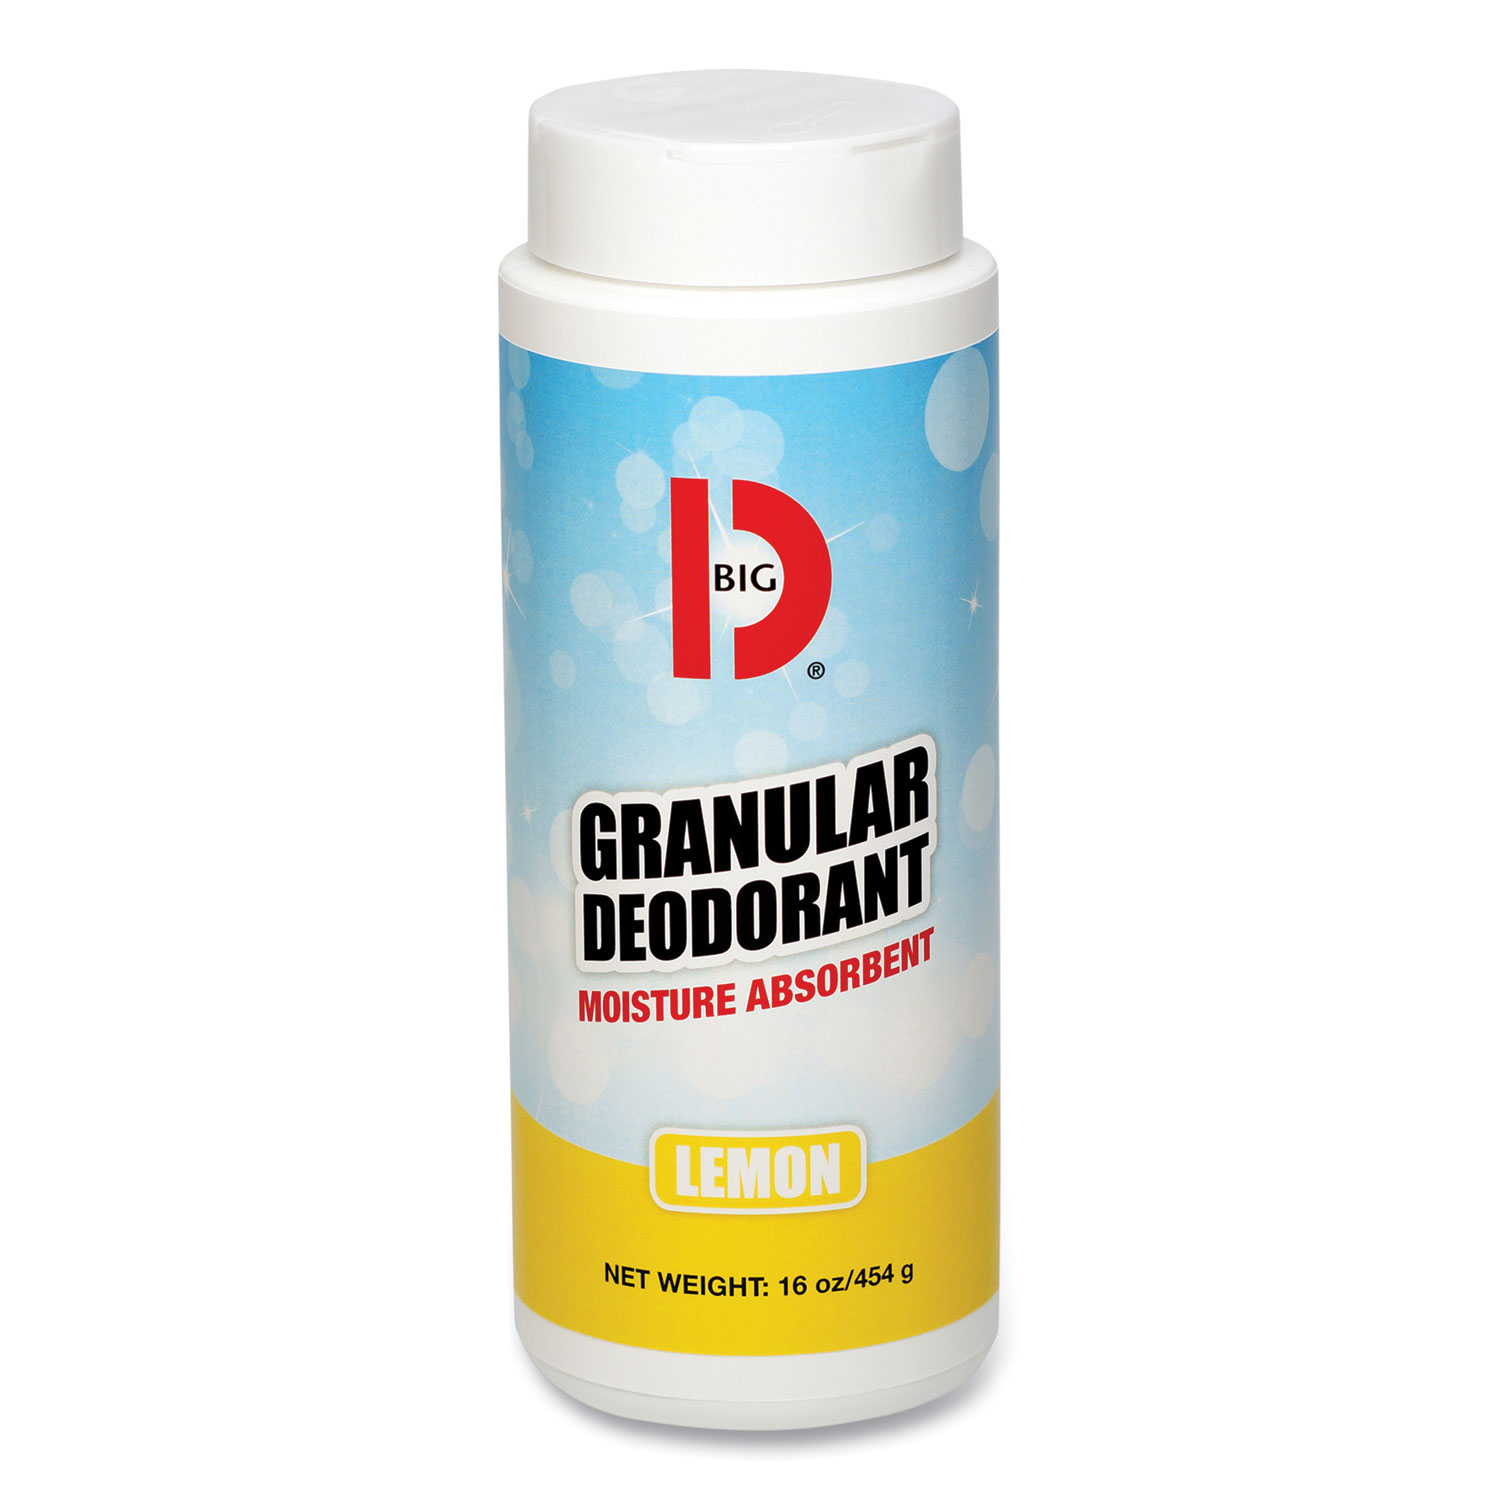 BIG D Granular Deodorant, Lemon, 16 Oz, Shaker Can, 12/Carton